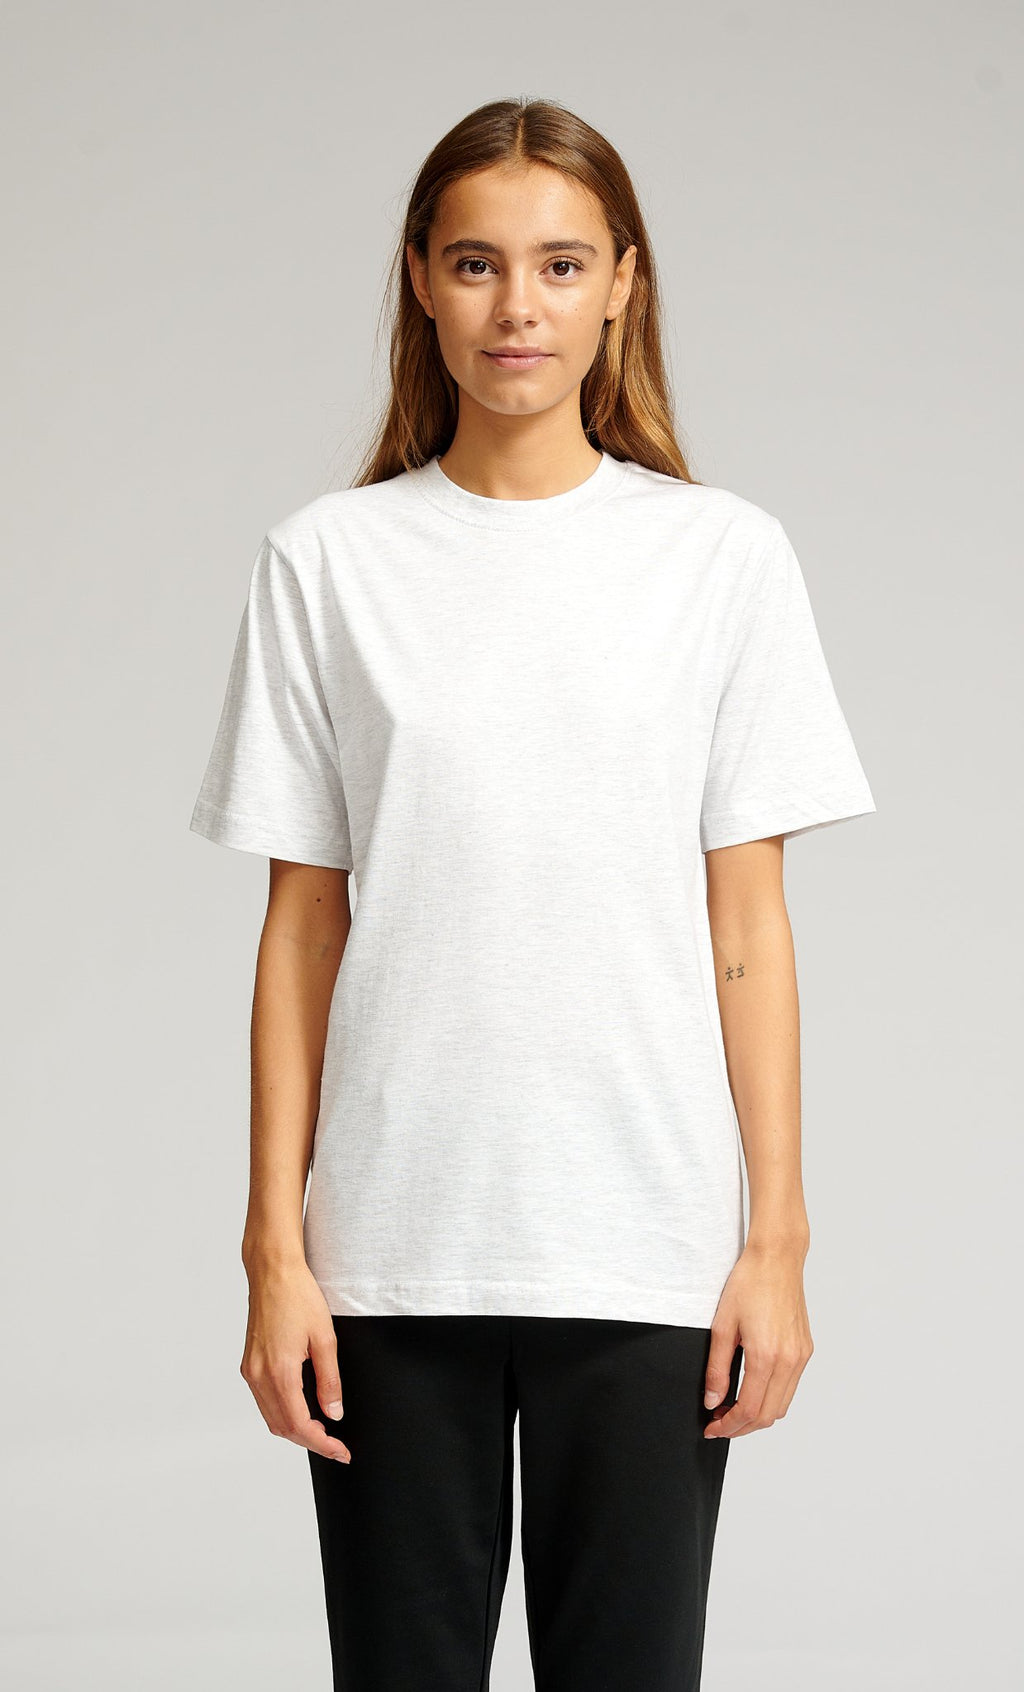 T-shirt surdimensionné - mélange gris clair